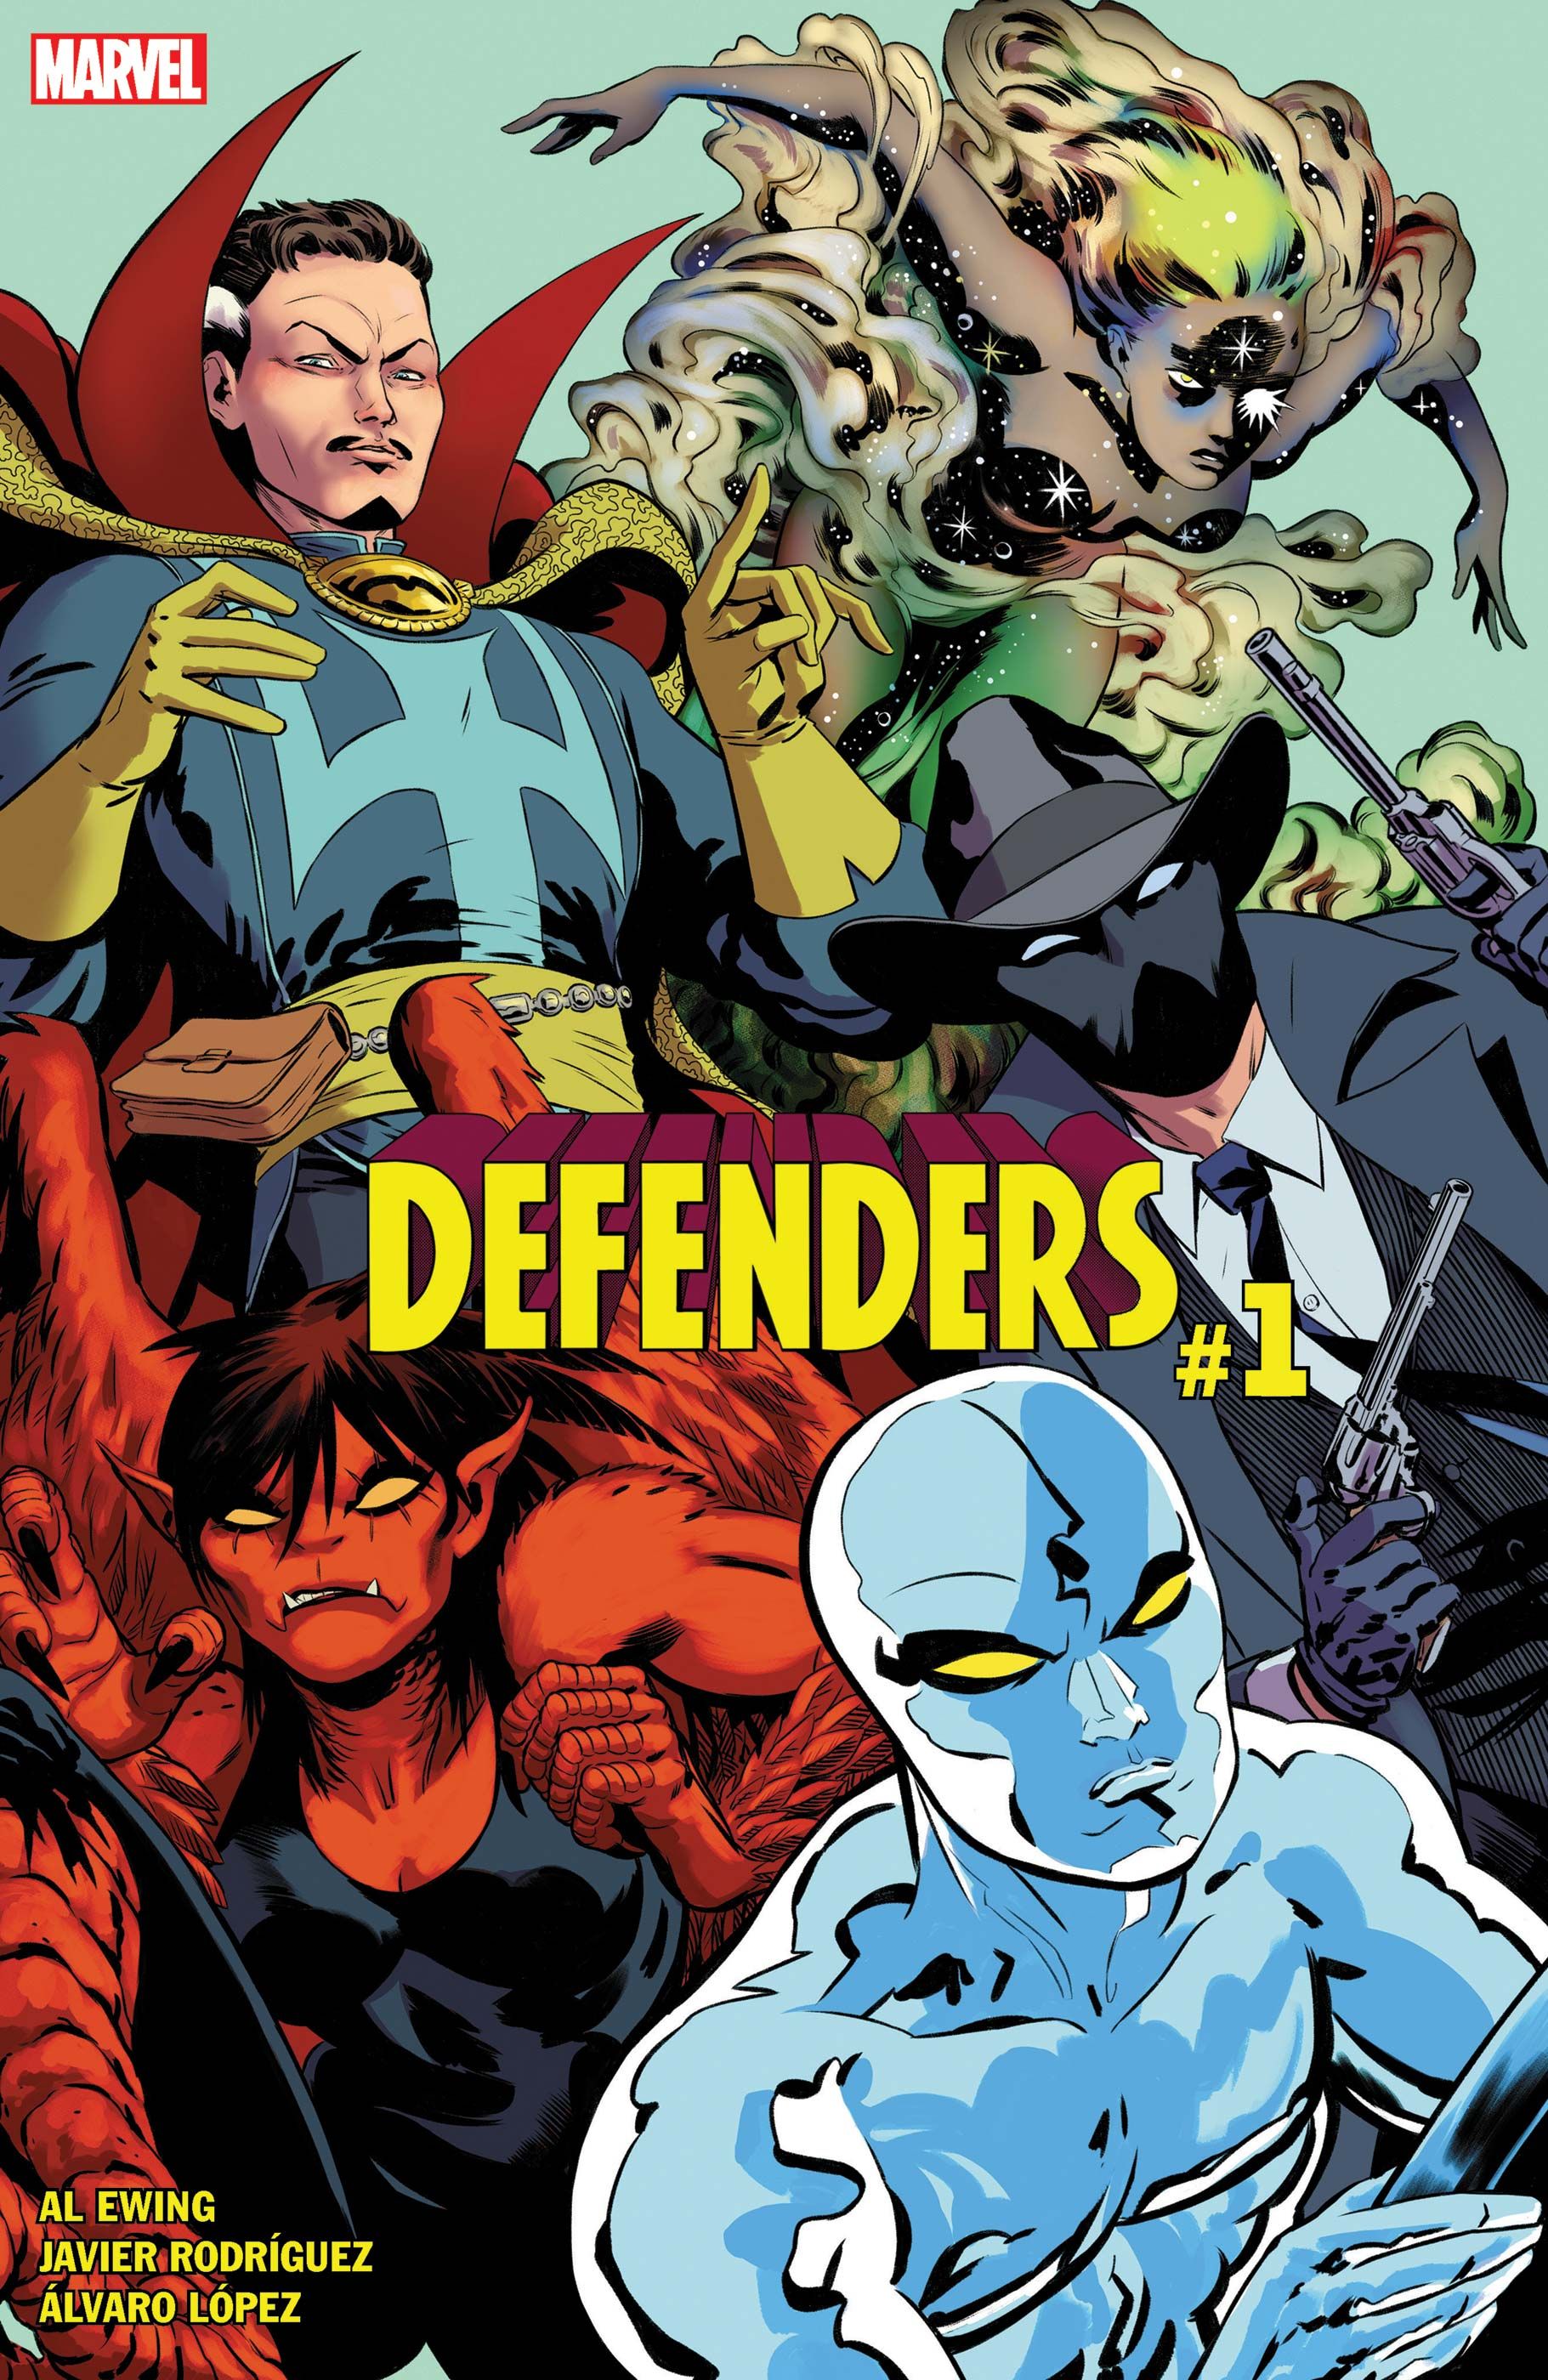 The Defenders #1 estrena su lista de equipos eléctricos y poco convencionales